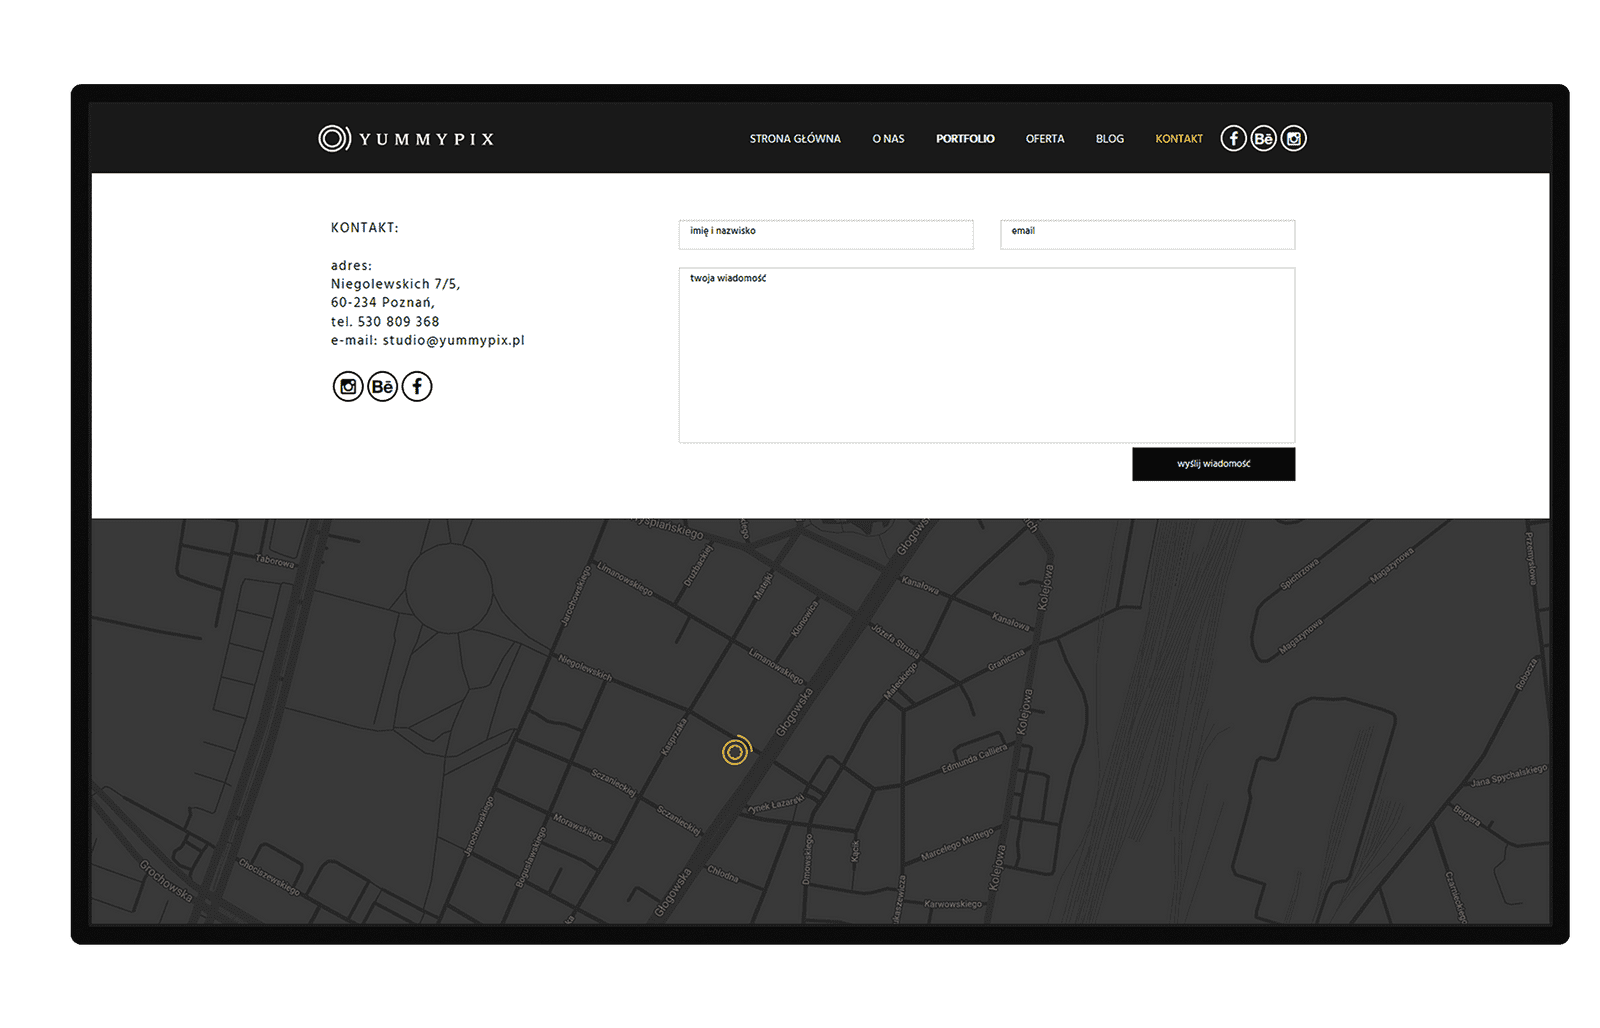 Aplinet dla Yummypix widok formularza kontaktowego i interaktywnej mapy